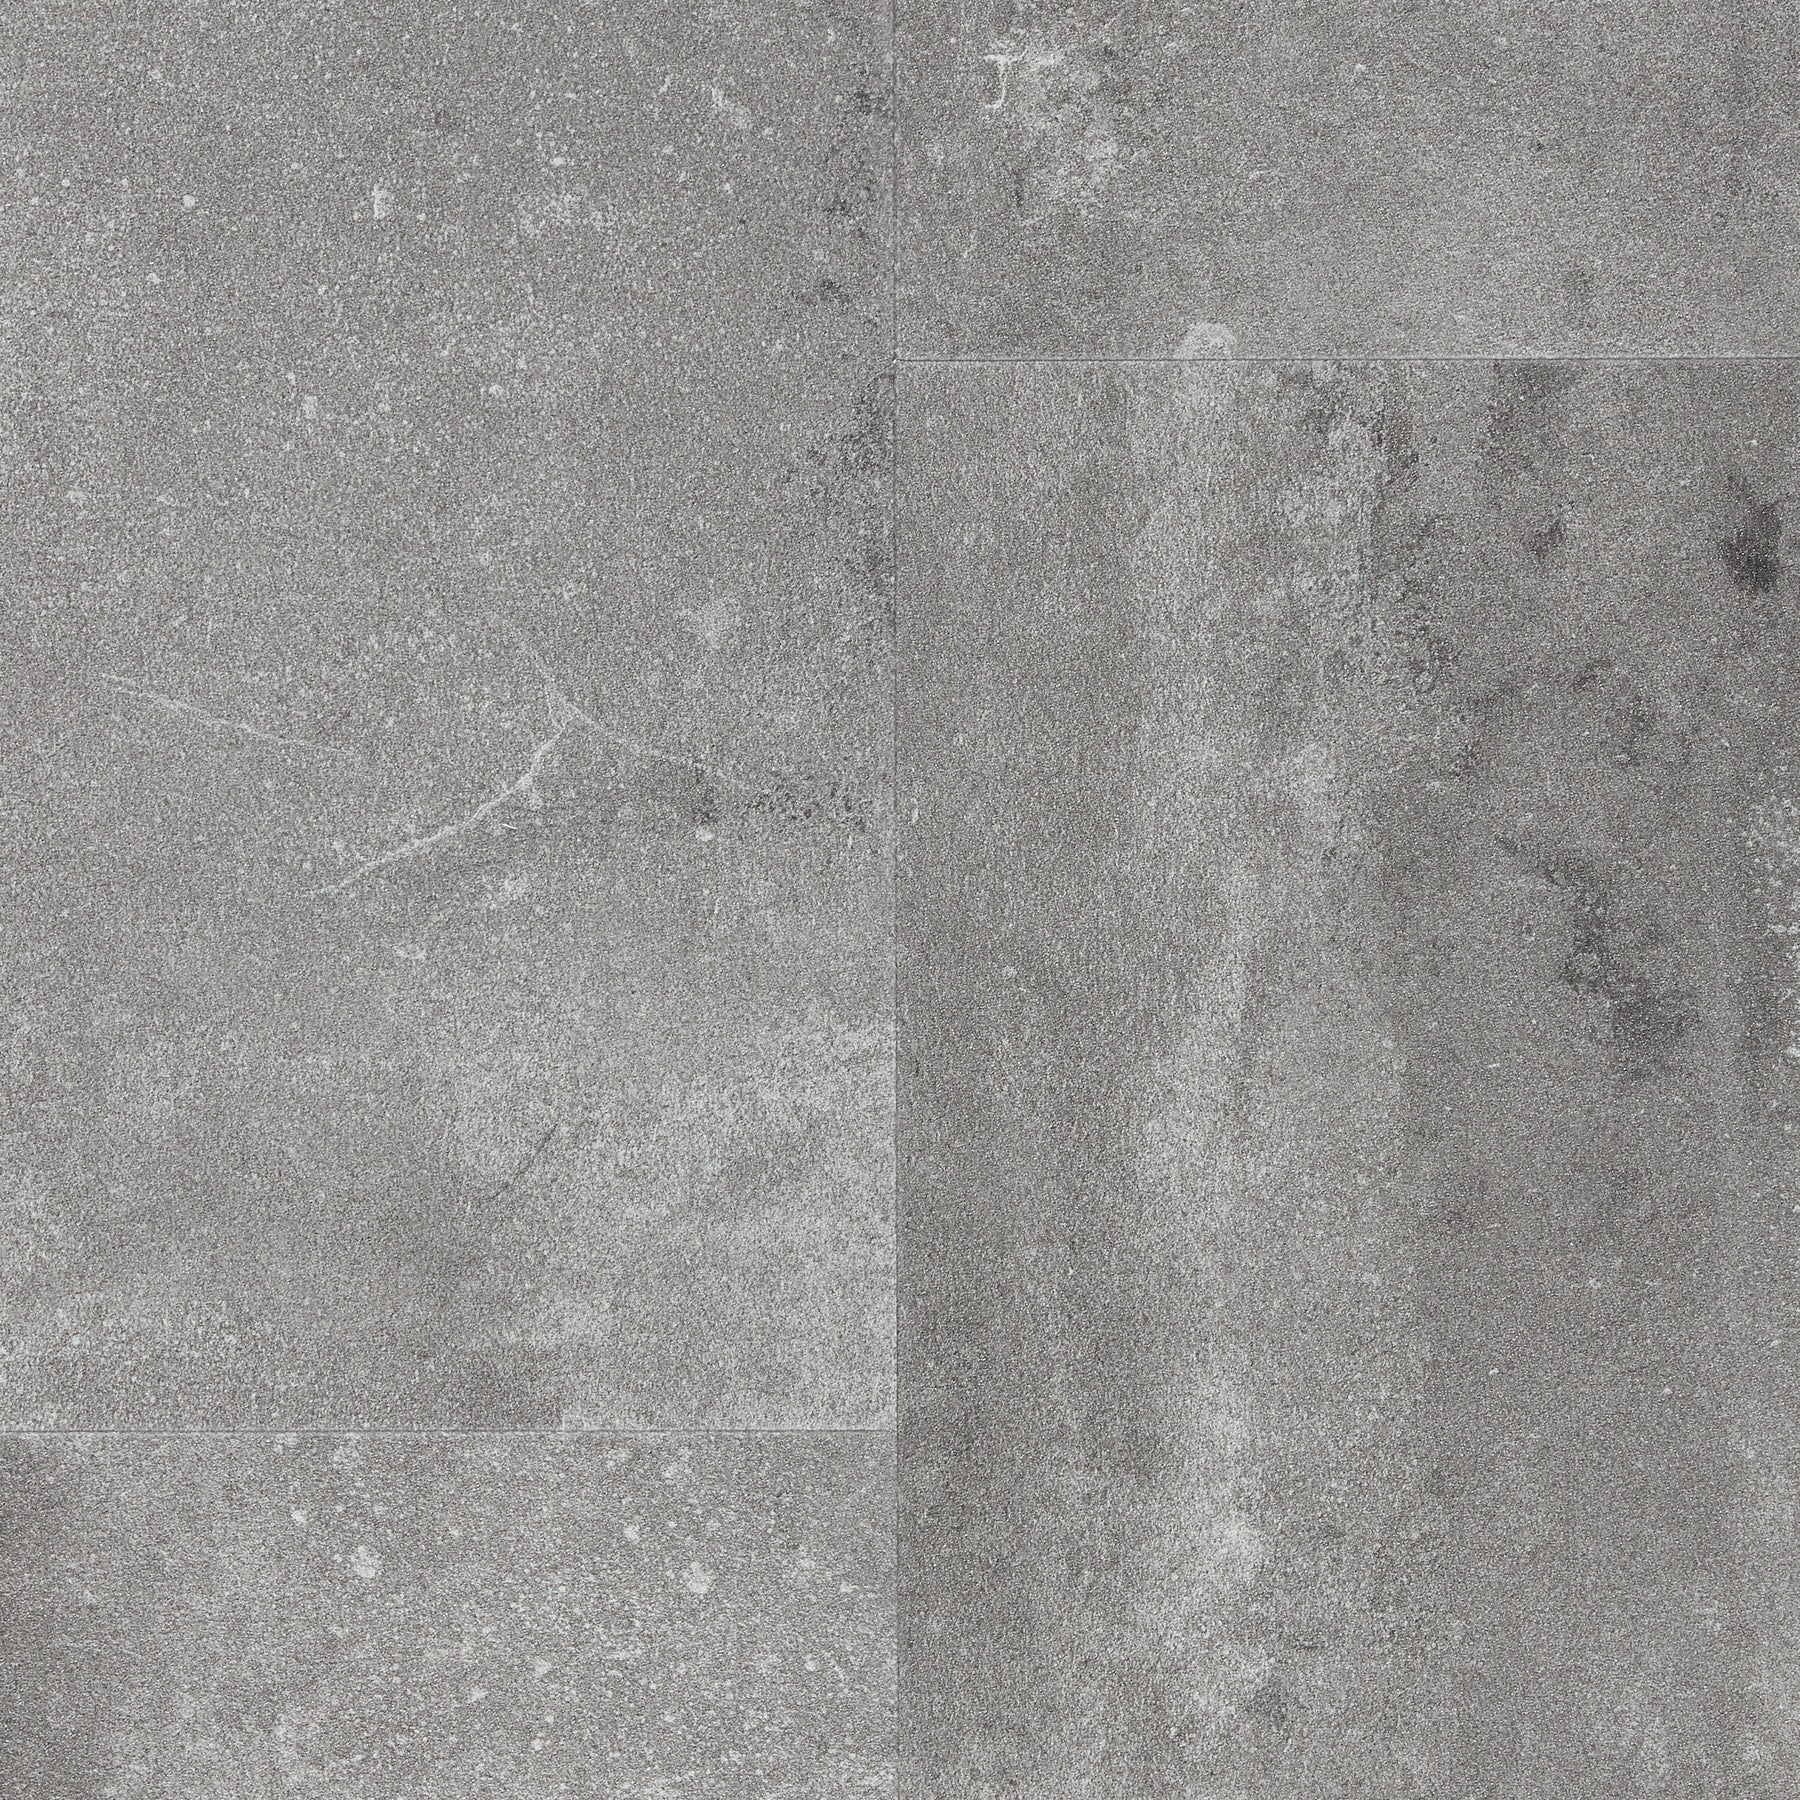 60001587 (Pure Click 55 Urban Stone (Ishigame) Gray)